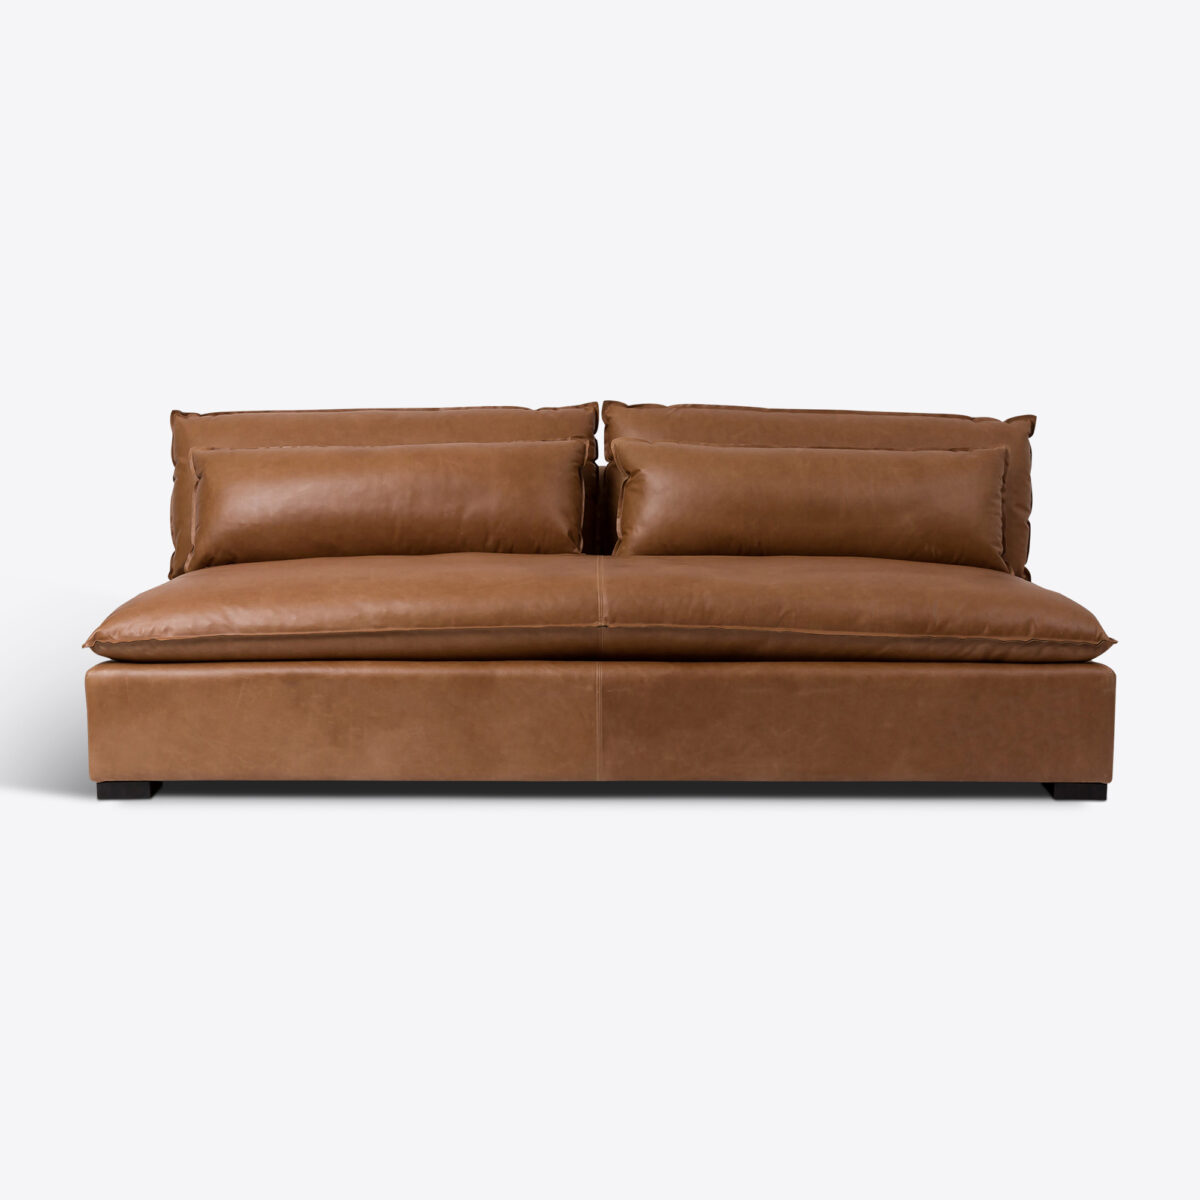 Saddle Tan Leather Amalfi Sofa